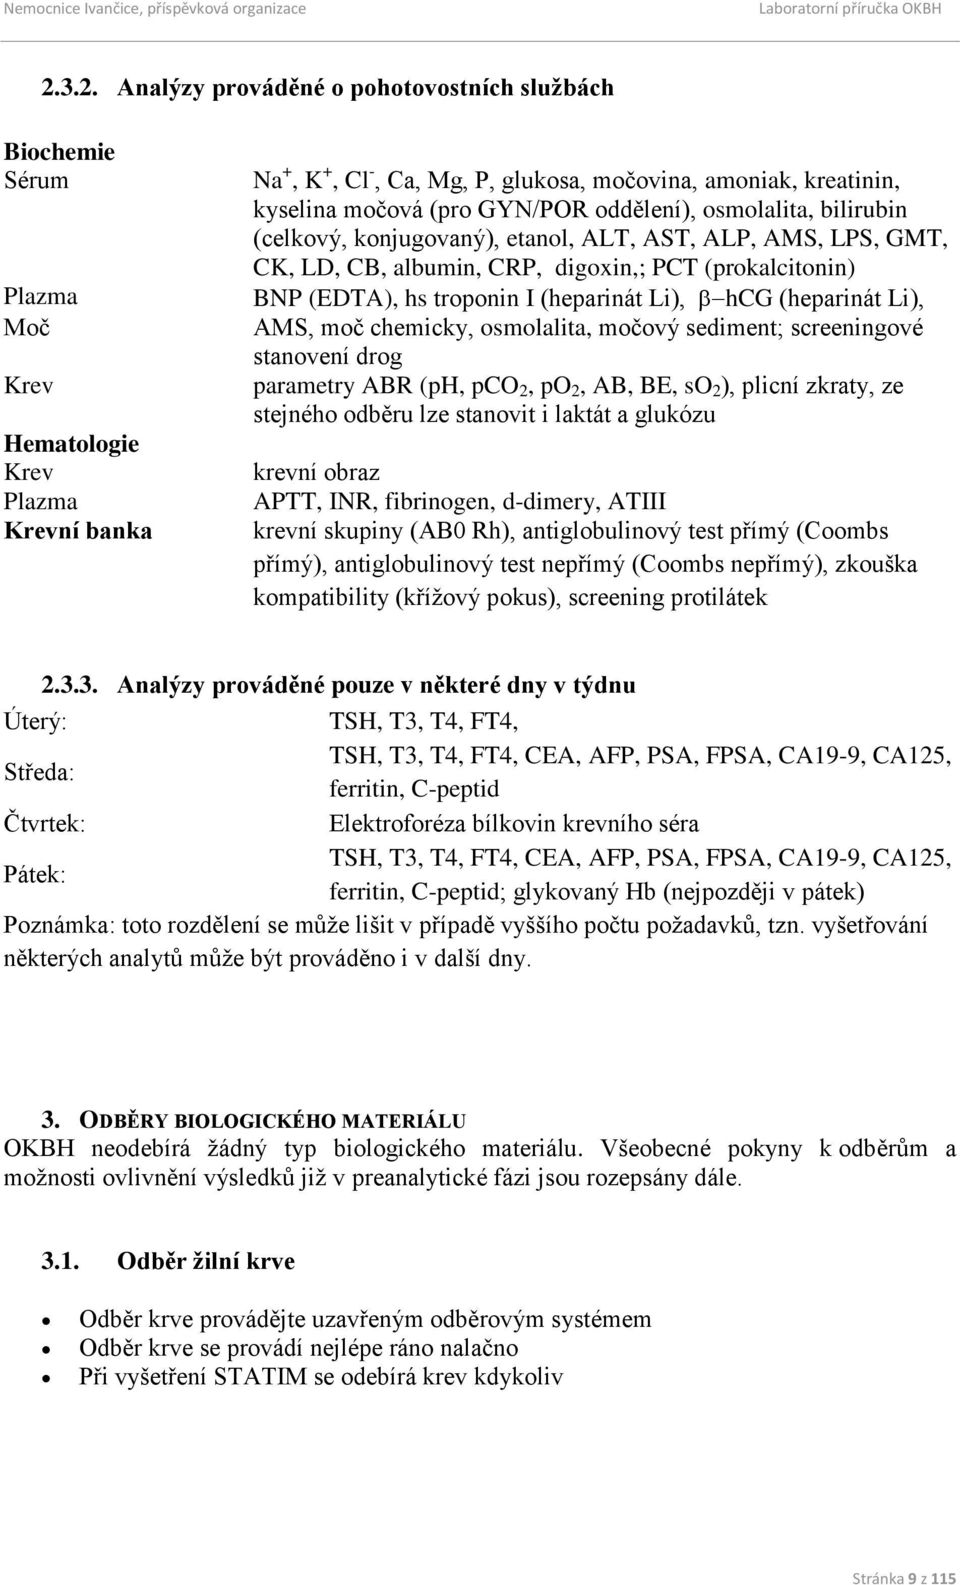 (heparinát Li), hcg (heparinát Li), AMS, moč chemicky, osmolalita, močový sediment; screeningové stanovení drog parametry ABR (ph, pco 2, po 2, AB, BE, so 2 ), plicní zkraty, ze stejného odběru lze